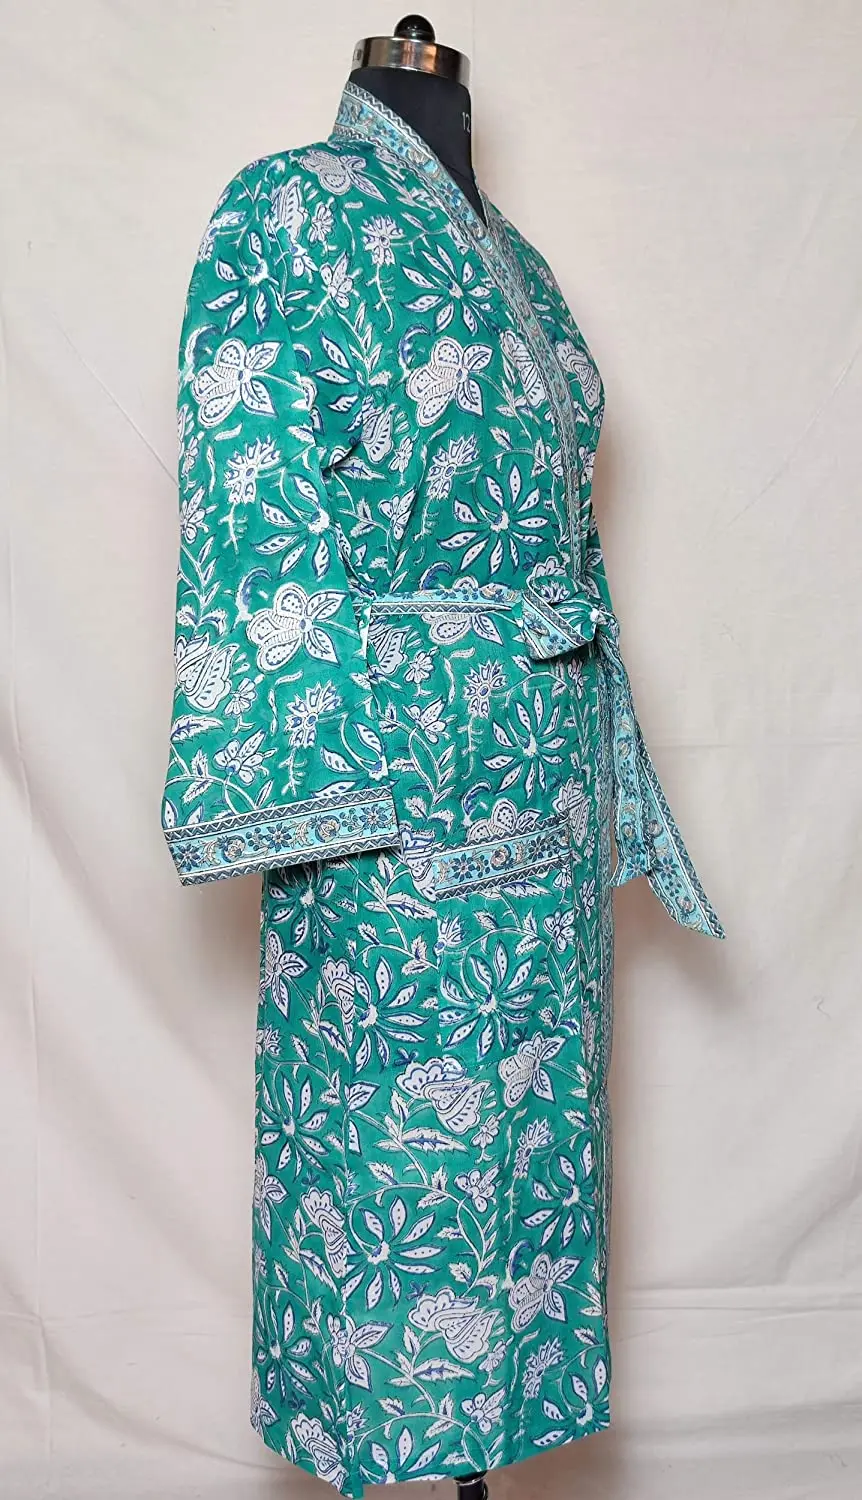 Hot Indian Hand Block Print Kimono Cotton Kimono/ Maxi Dress,Floral ...